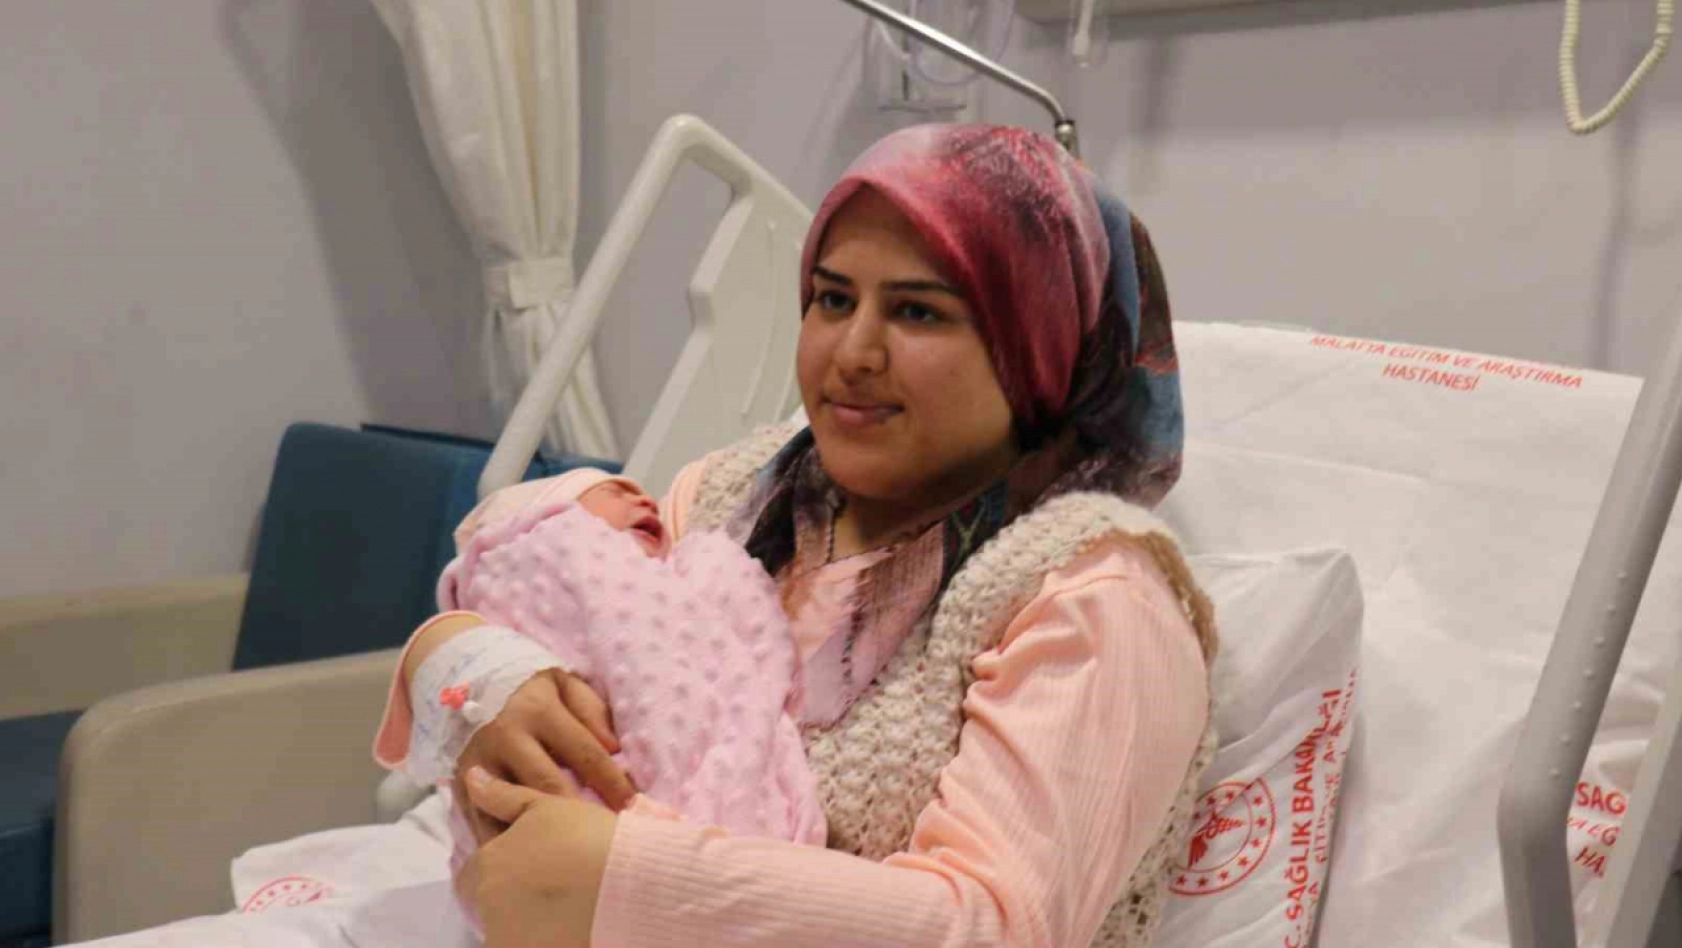 Malatya'da yeni yılın ilk bebeği dünyaya geldi